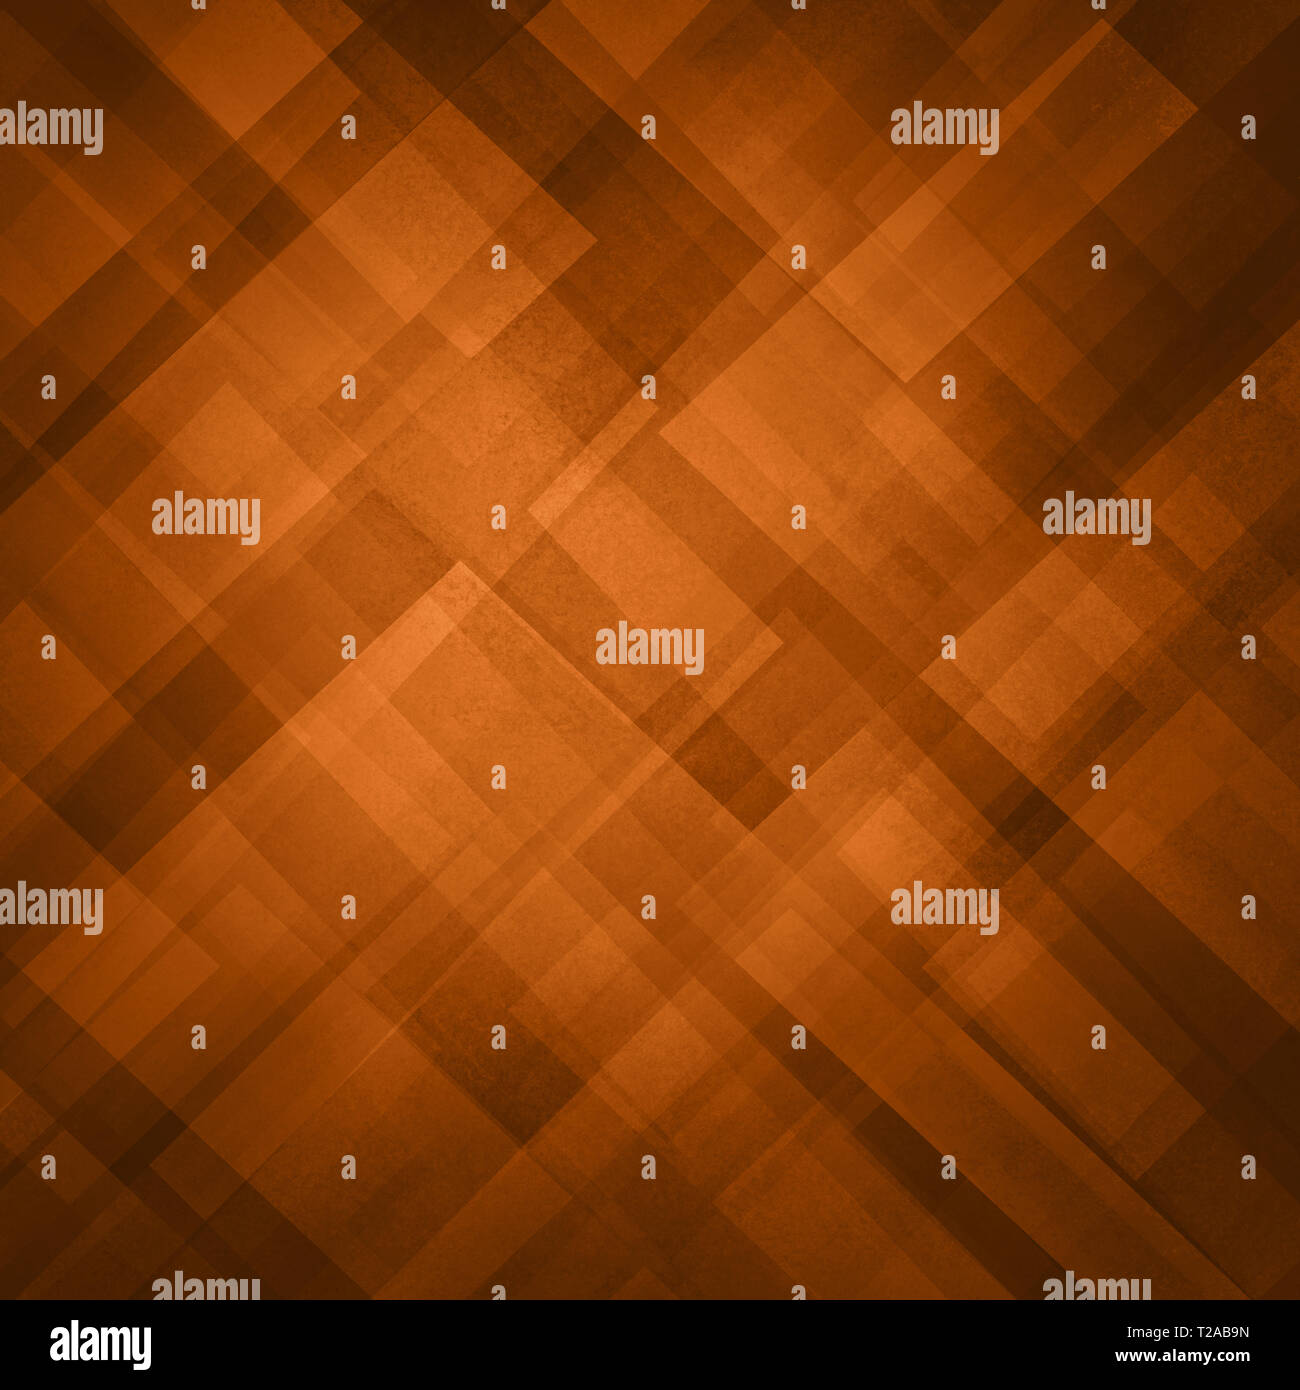 Abstract di rame e lo sfondo arancione pattern con blocchi diagonale e triangolo in moderno design geometrico Foto Stock